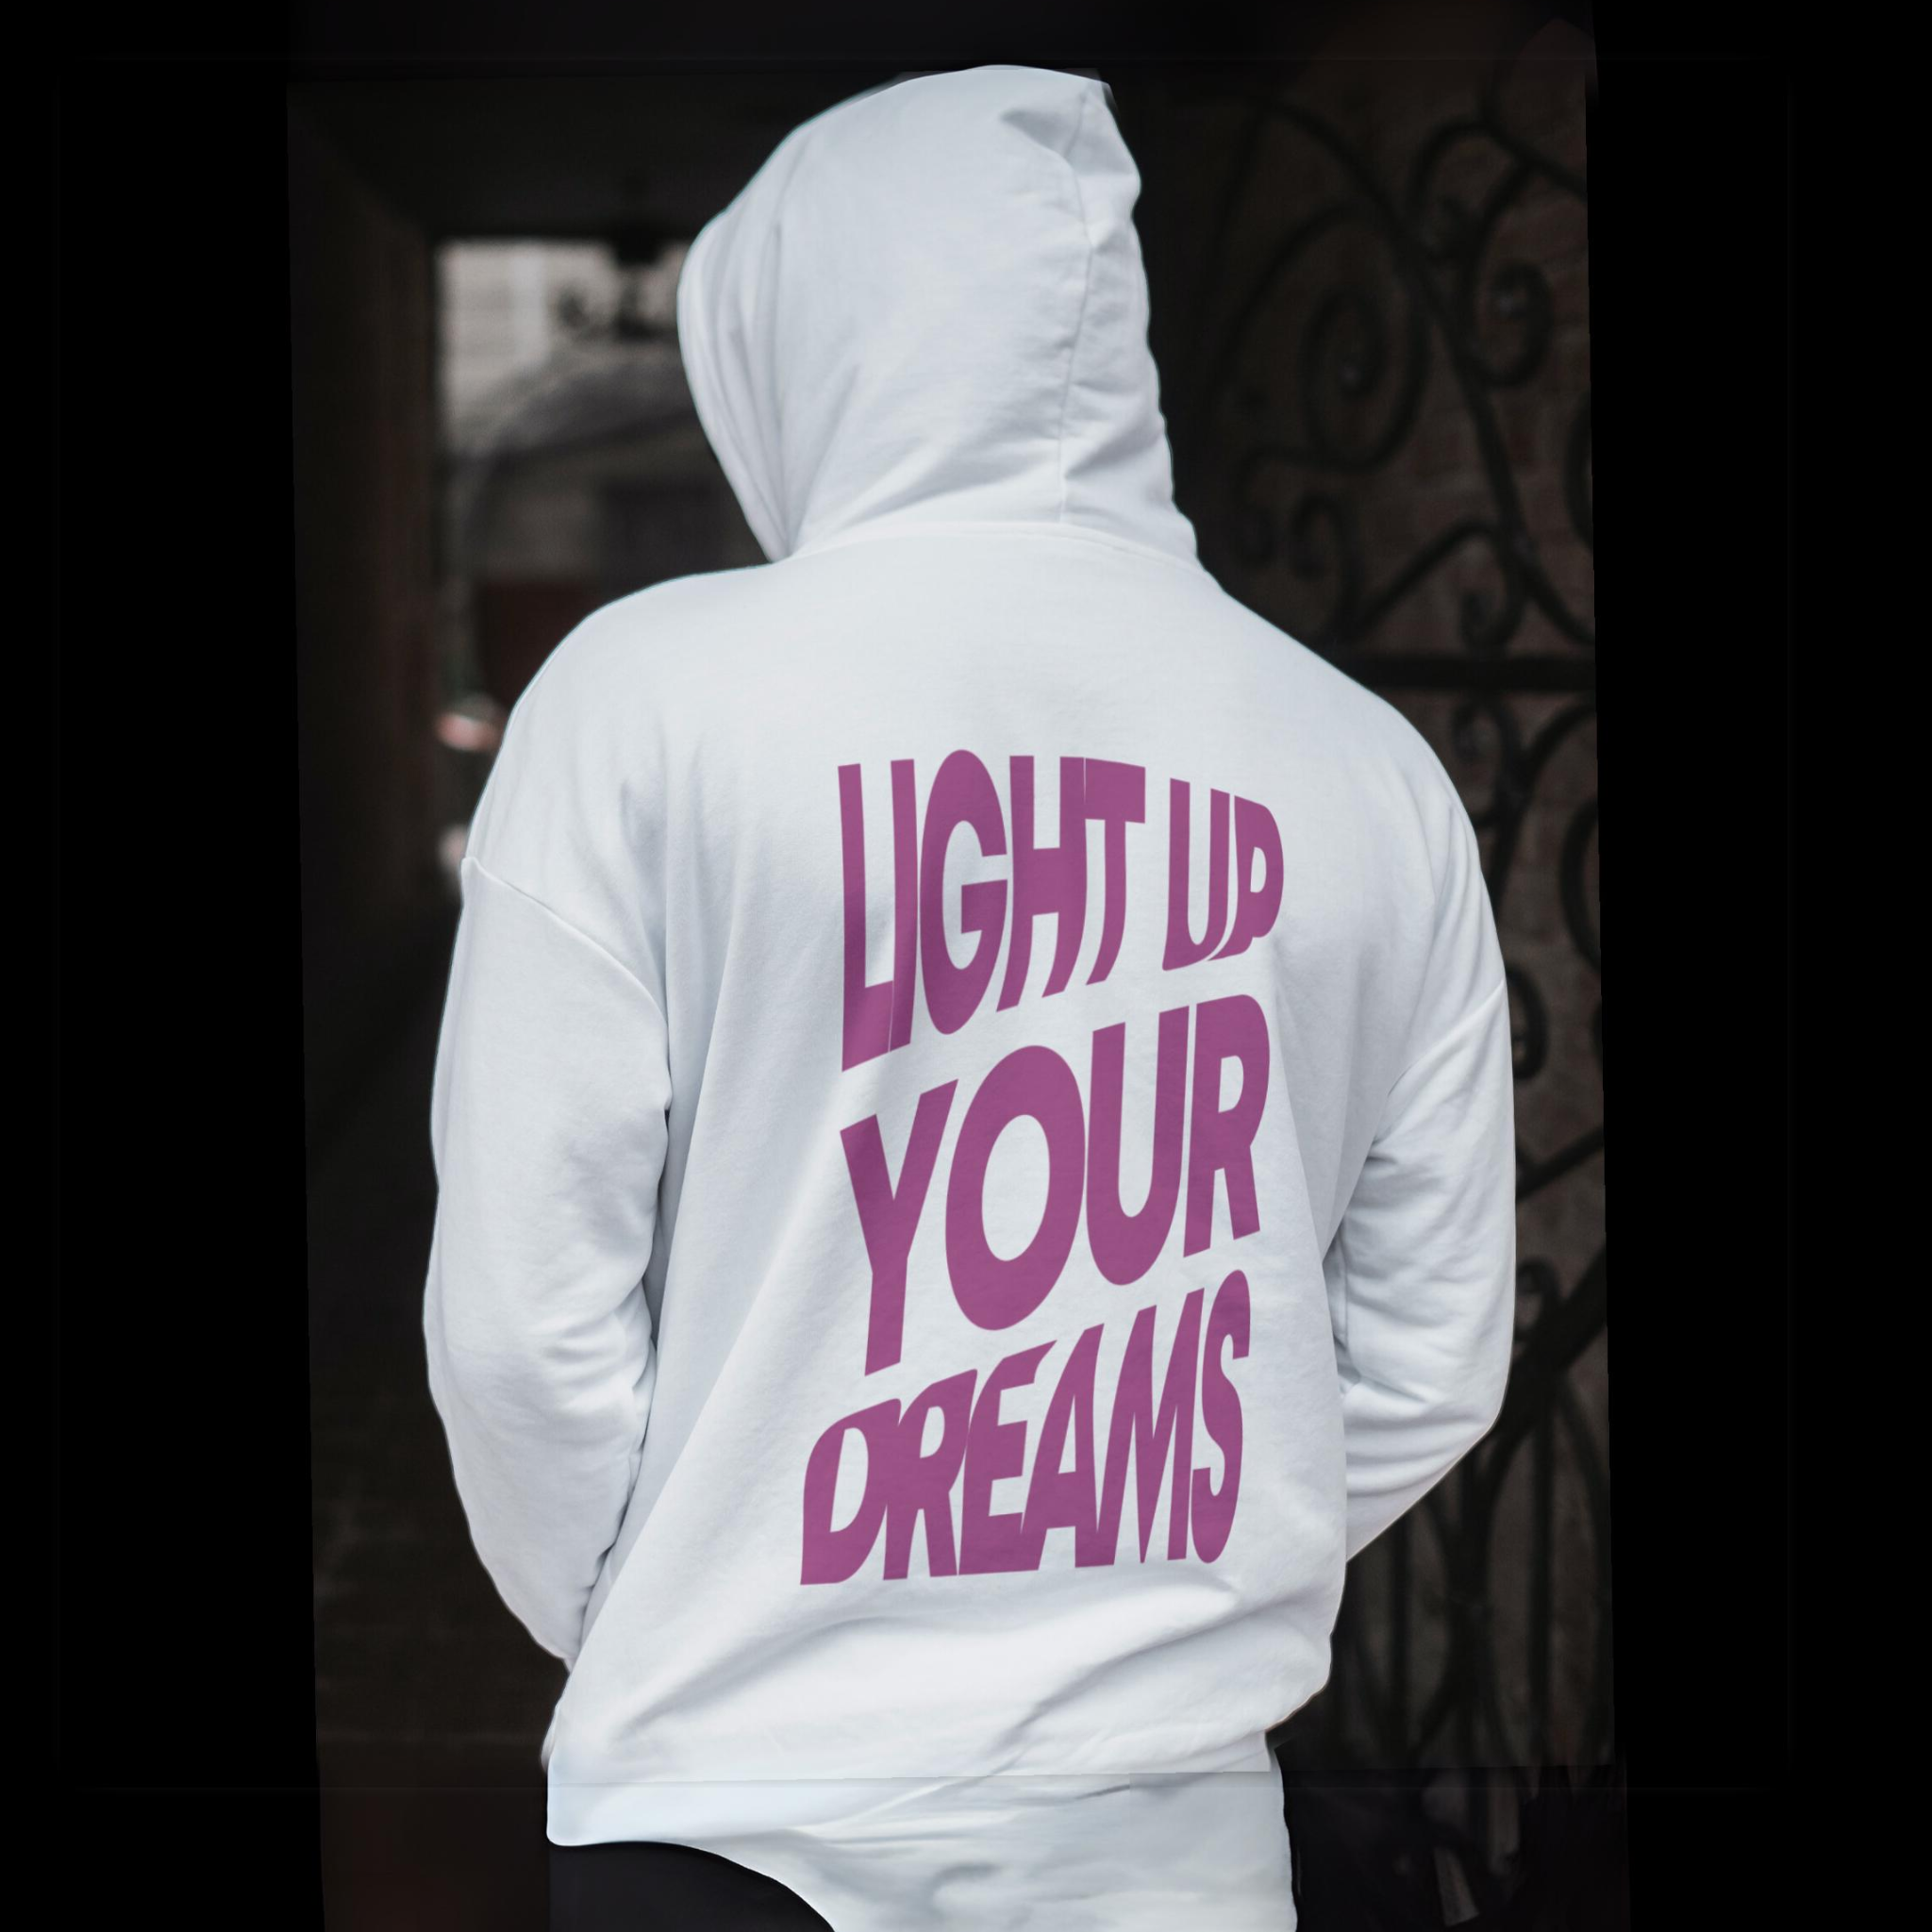 Güneşte Renk Değiştiren Oversize Hoodie Sweatshirt - Light Up Your Dreams